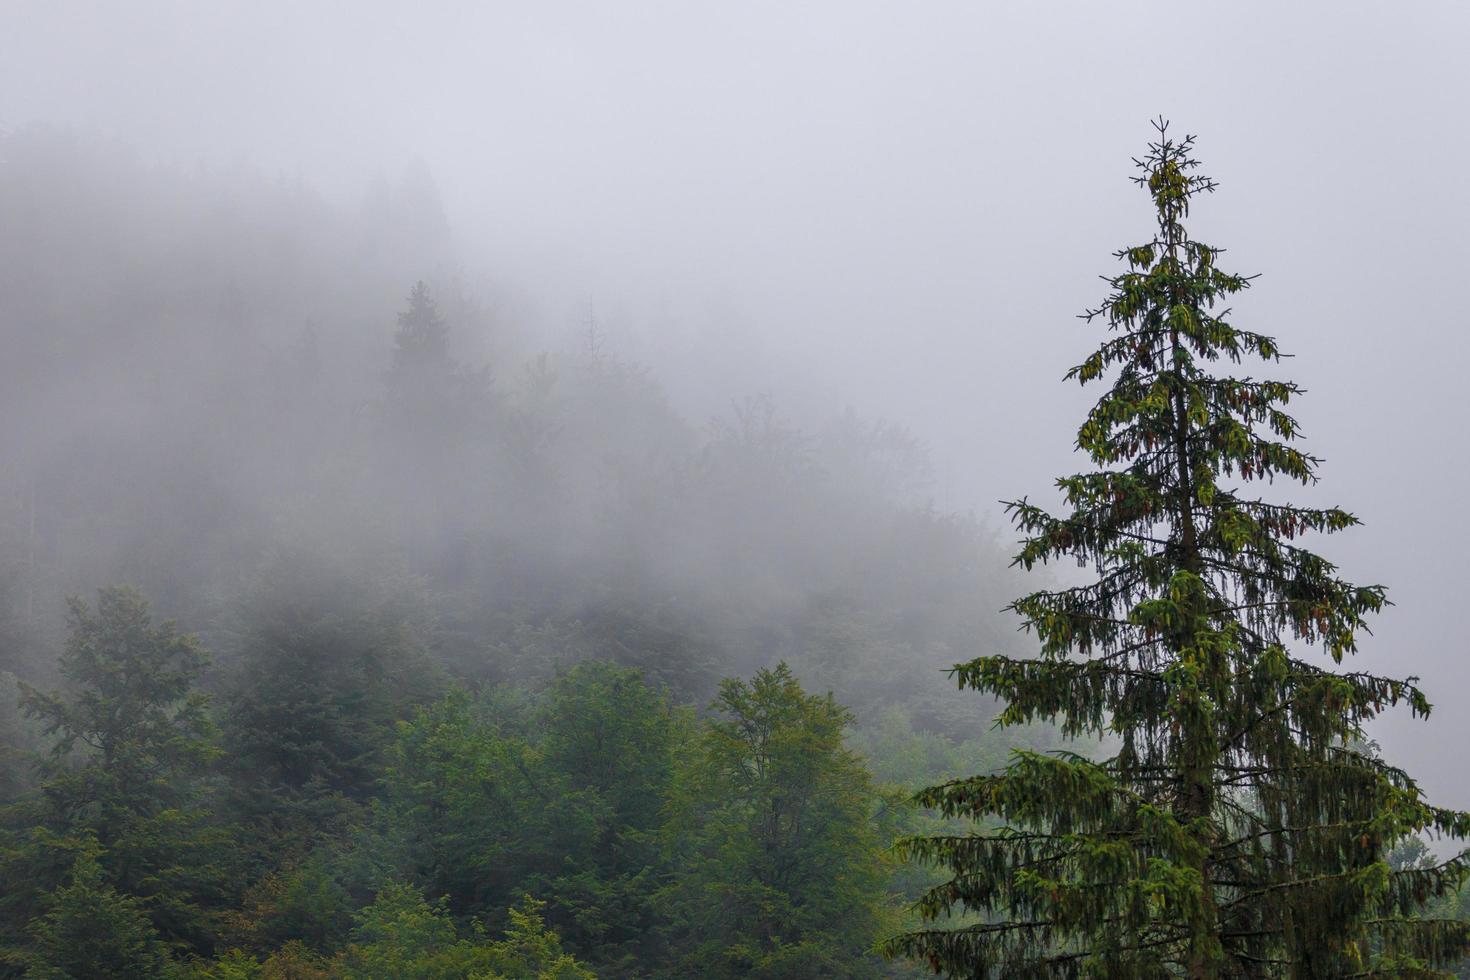 floresta nublada durante a estação chuvosa de outono foto